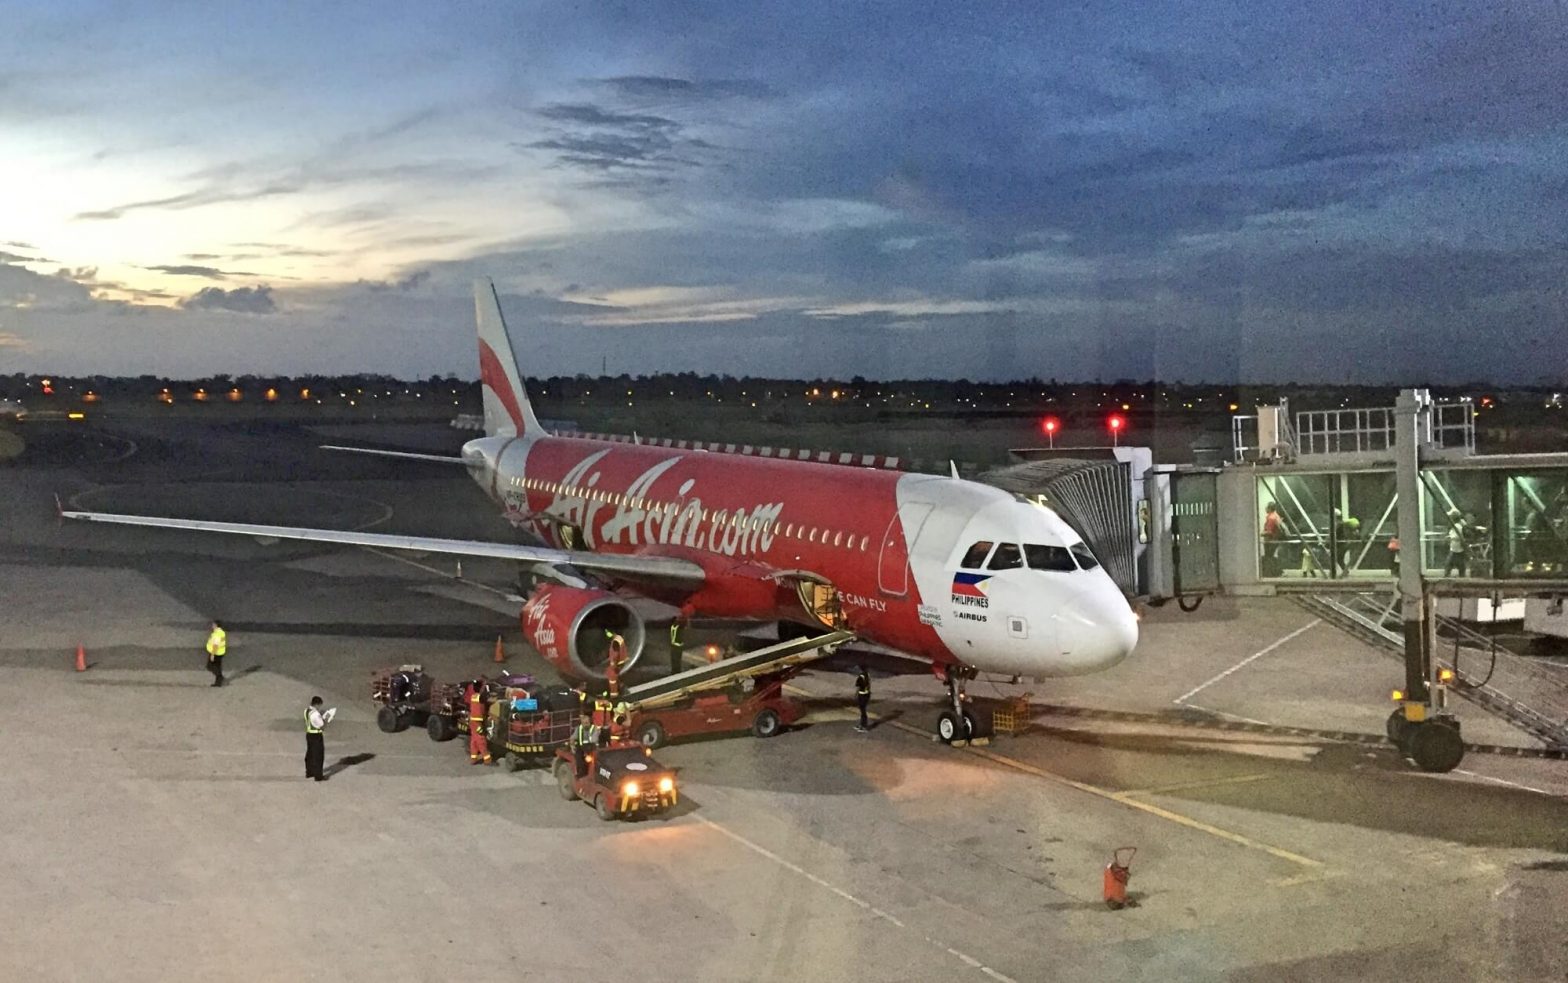 Philippines AirAsia opens flights to Boracay, Palawan from Cebu and Davao